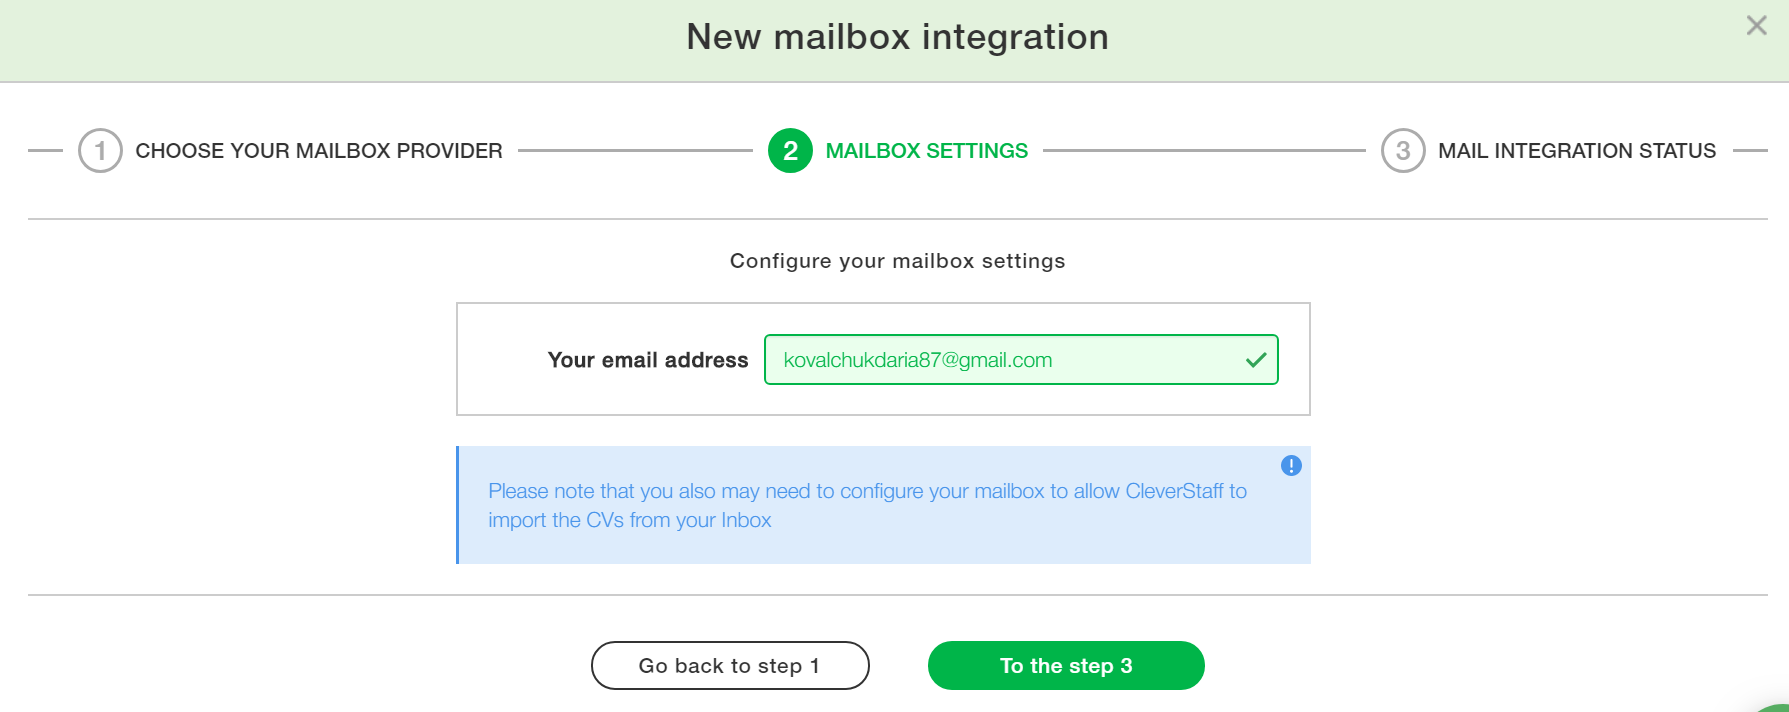 Email integration Google Chrome 2018 11 19 15.35.01 - Как настроить интеграцию с email?